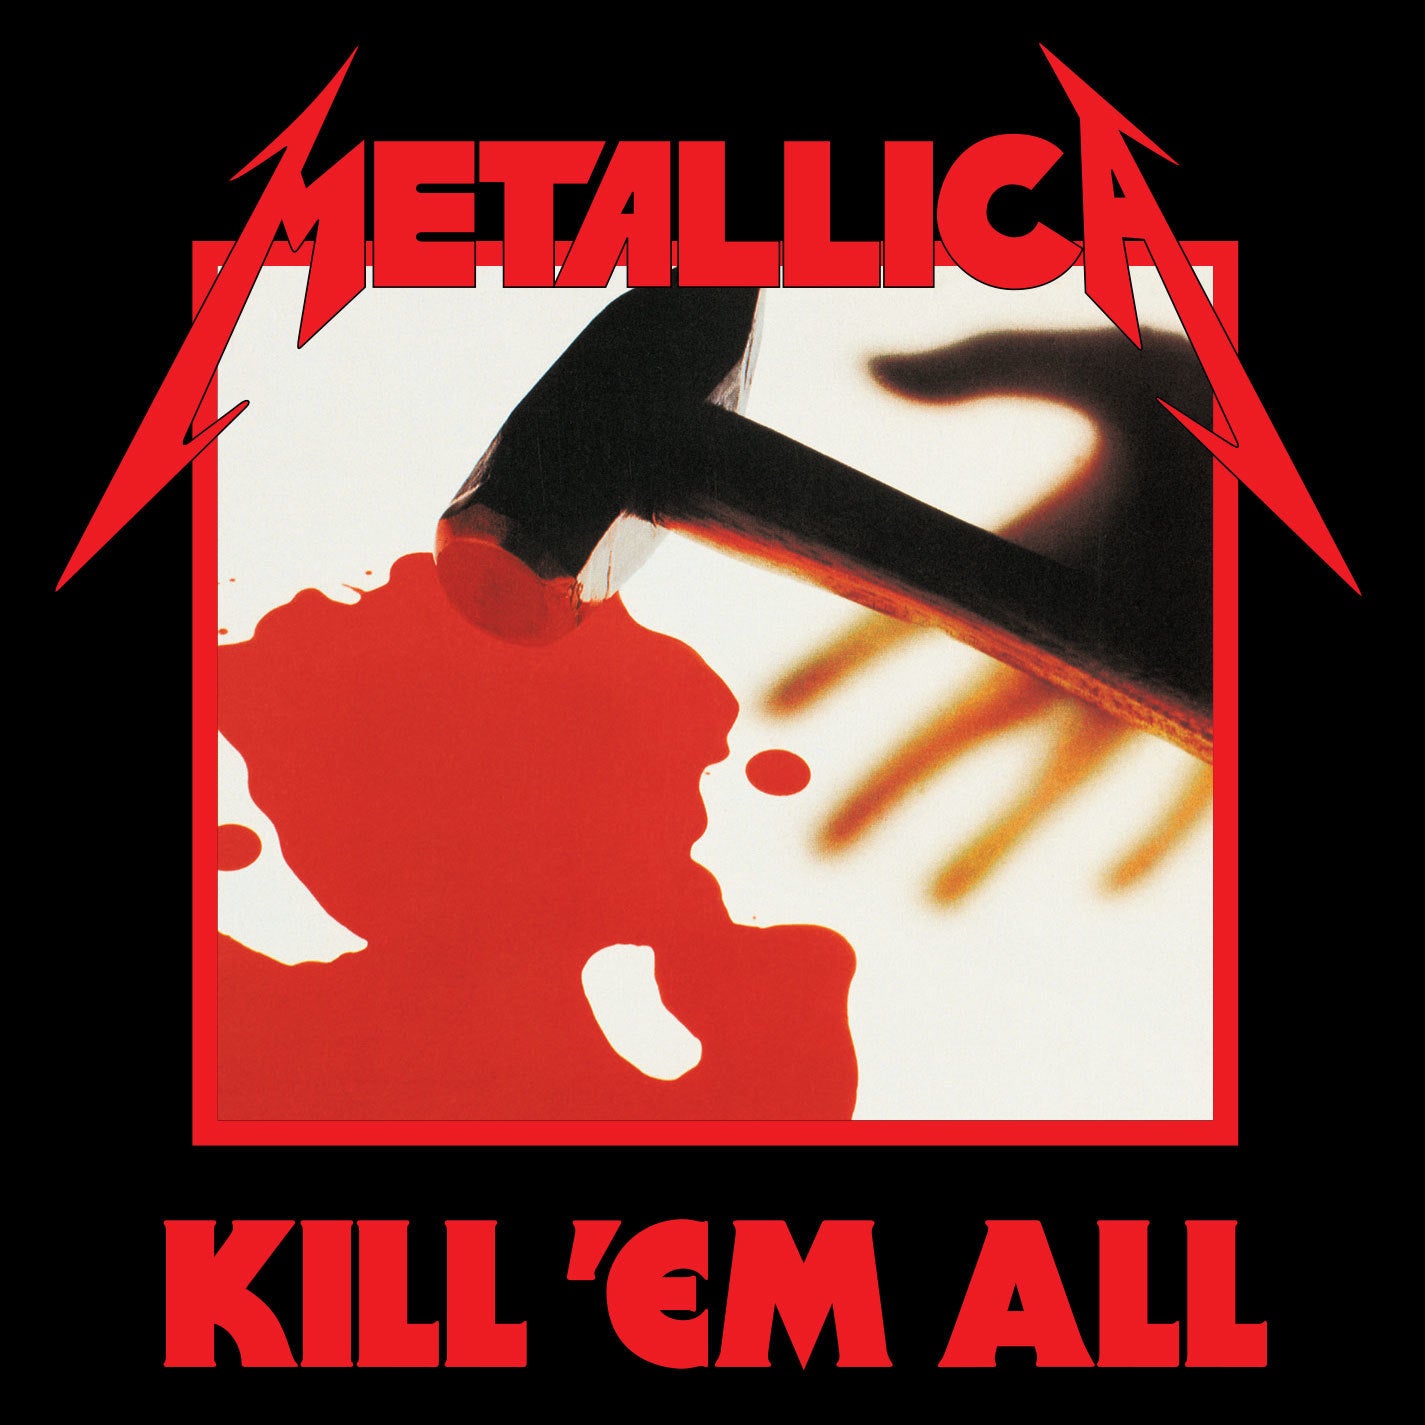 METALLICA - KILL 'EM ALL - VINYL LP